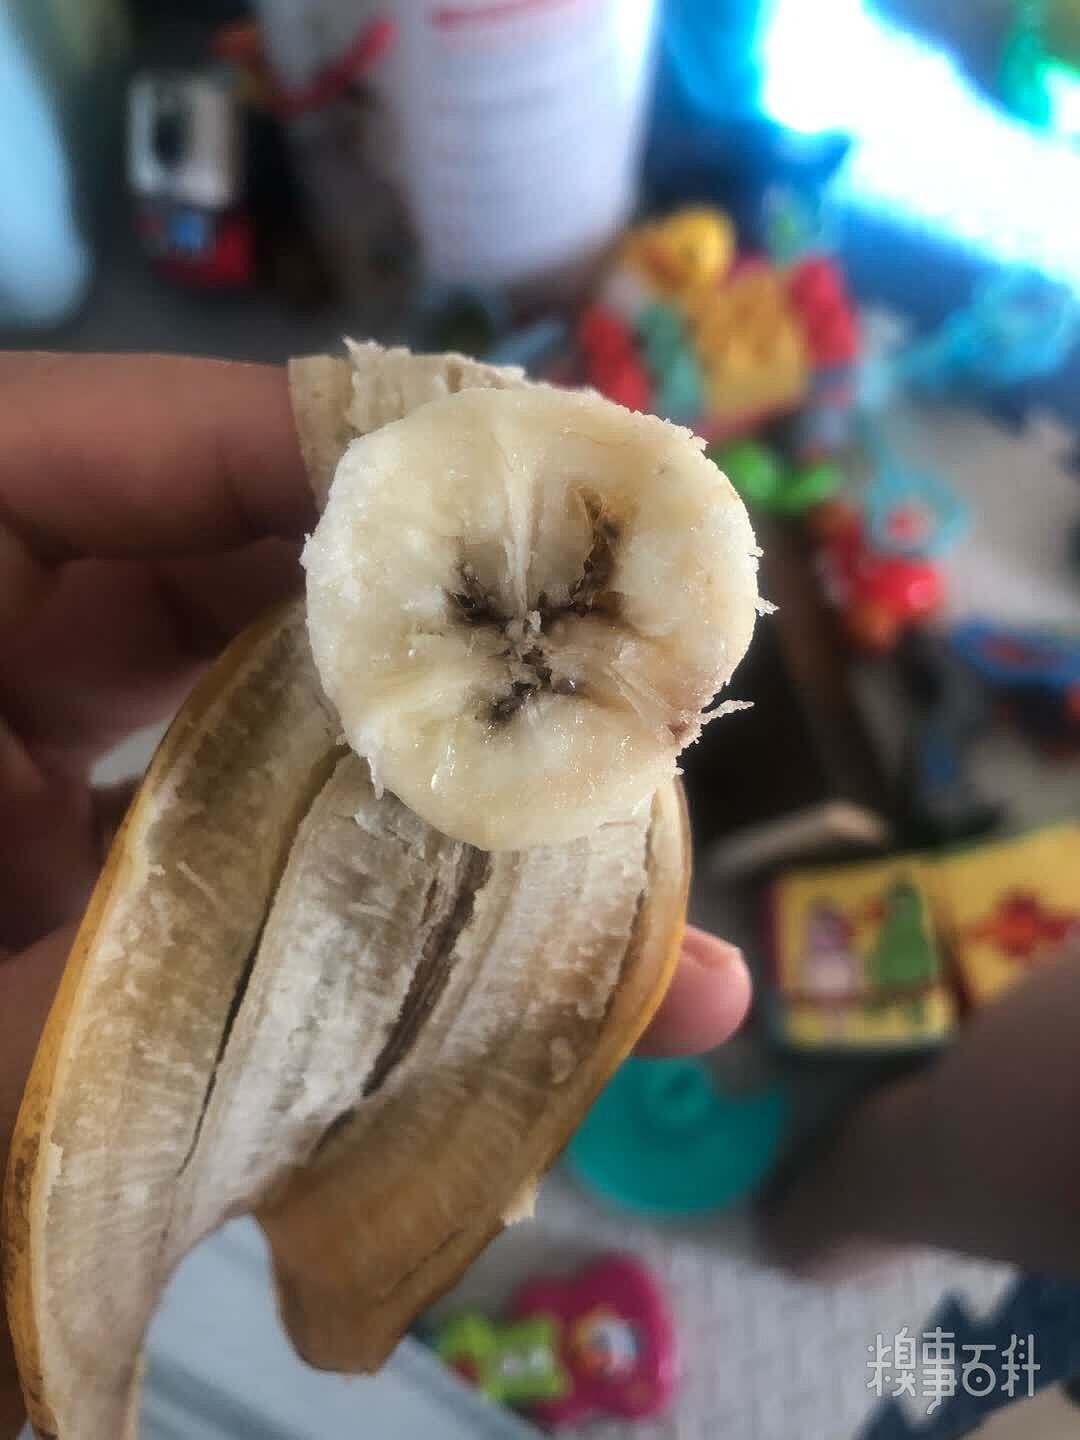 吃根香蕉，可它有点儿